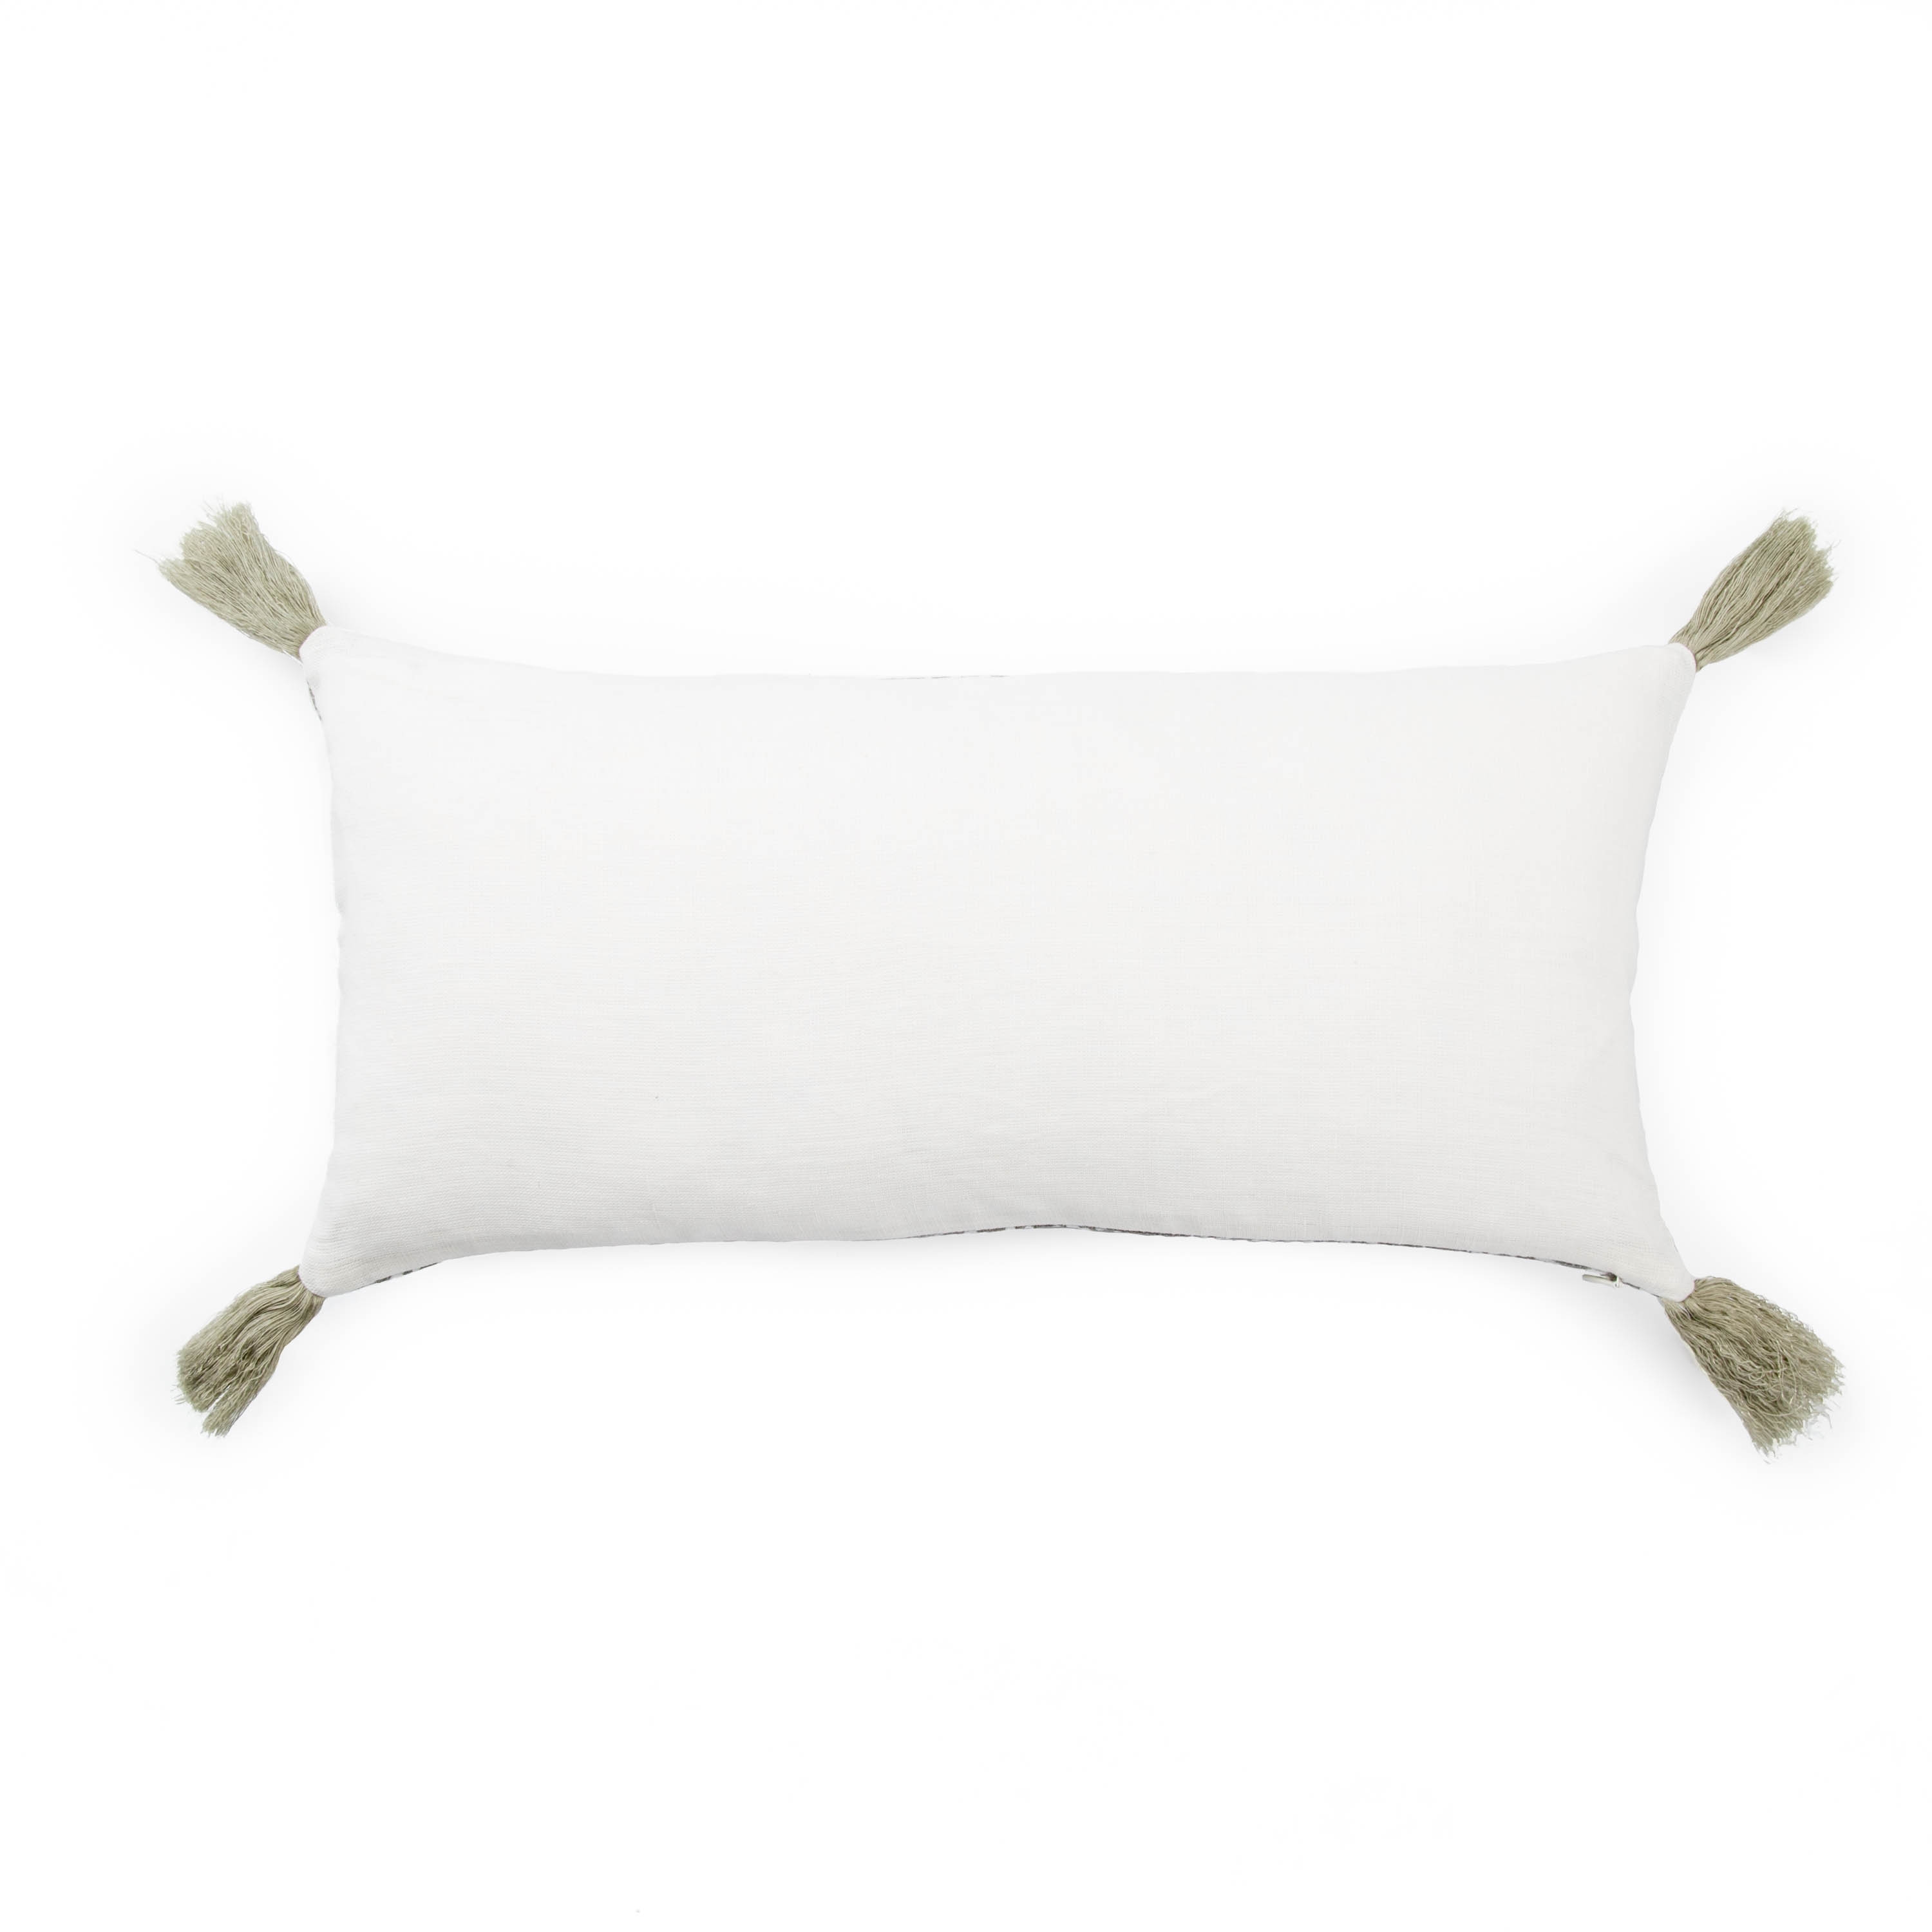 Makenzie Lumbar Pillow, 21" x 10", Taupe - DISCONTINUED - Image 1